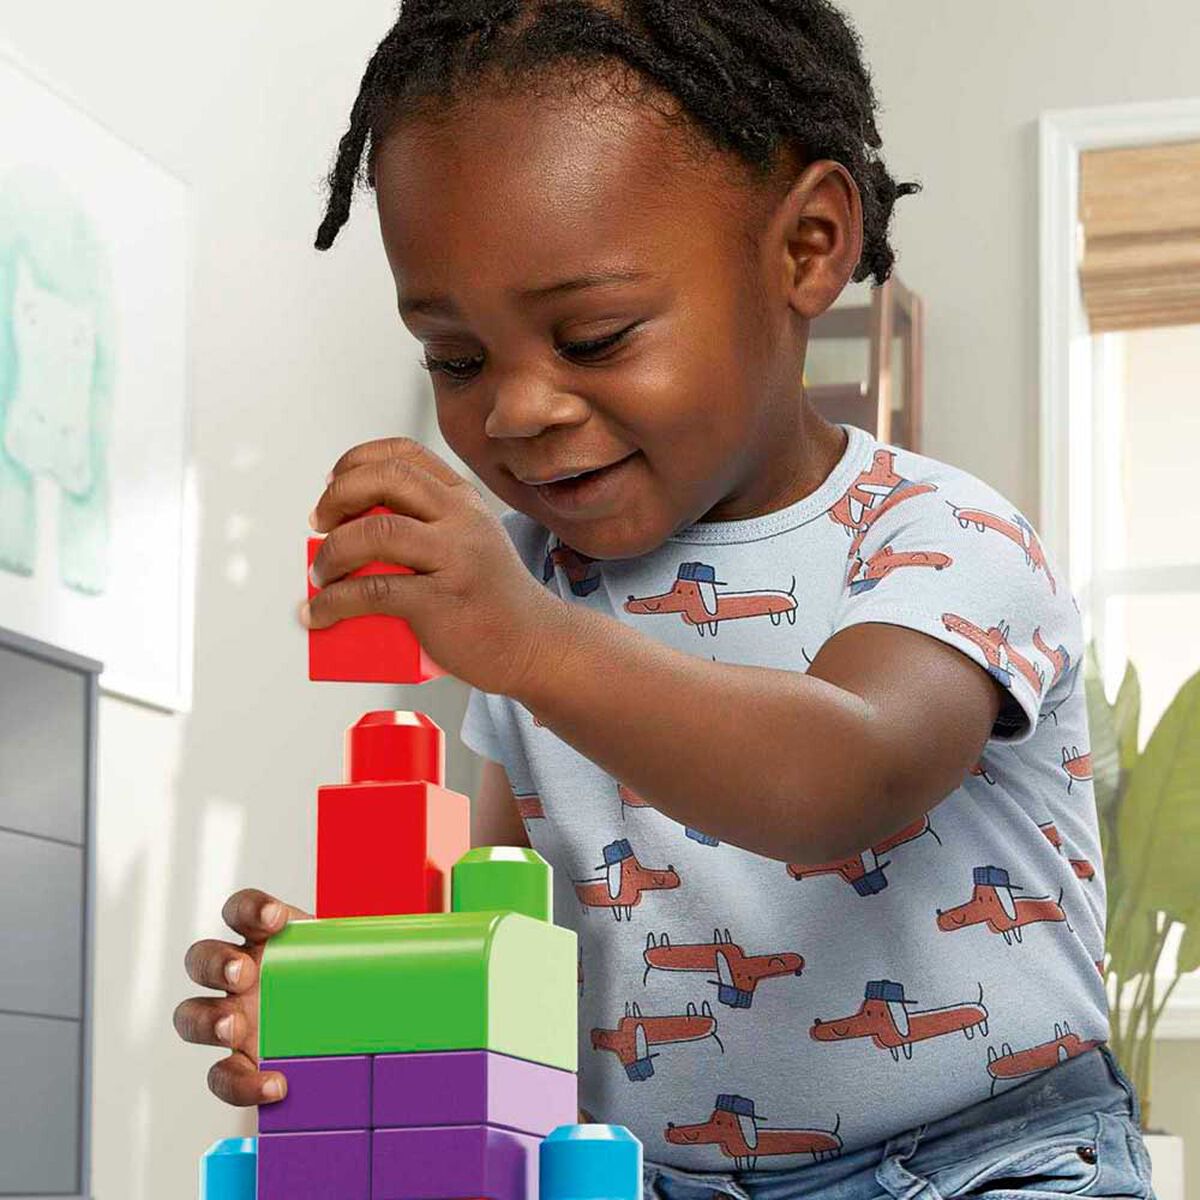 Juguetes Para Bebés, Mega Bloks Bolsa Clásica Con 60 Bloques De  Construcción, Juguetes Bebés 1 Año, Mega Bloks